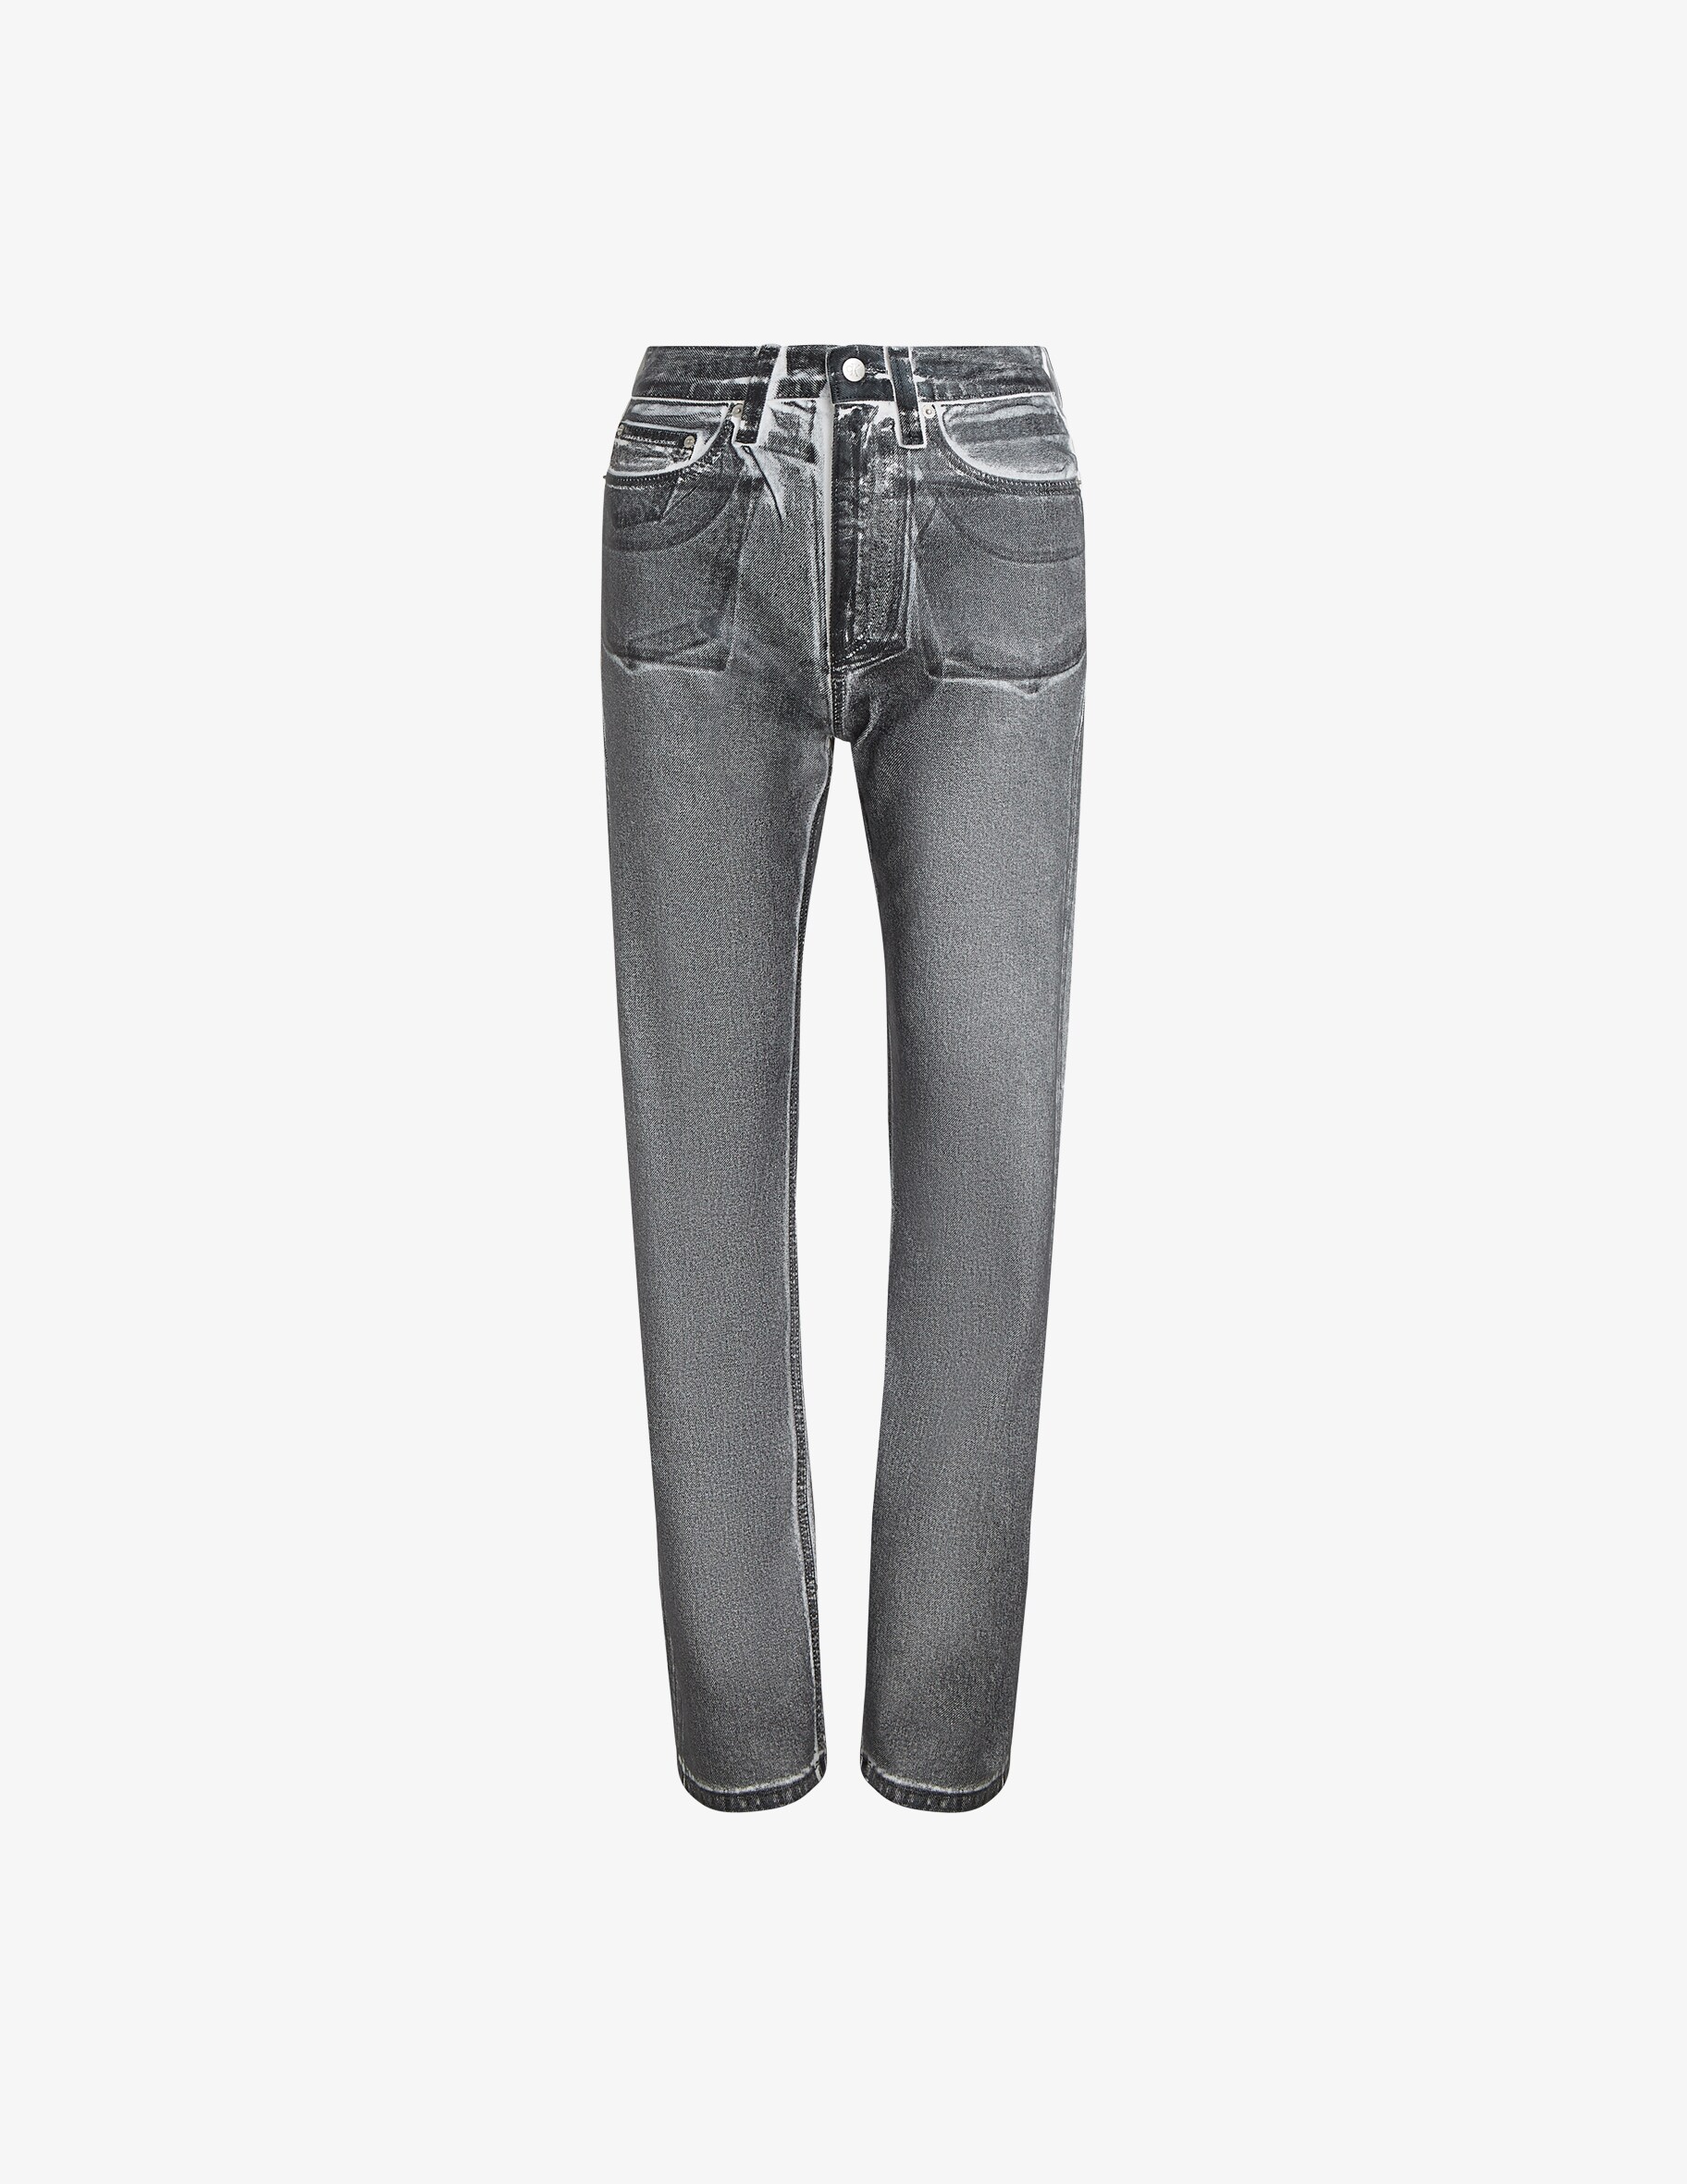 Прямые джинсы с высокой посадкой Calvin Klein Jeans, серый